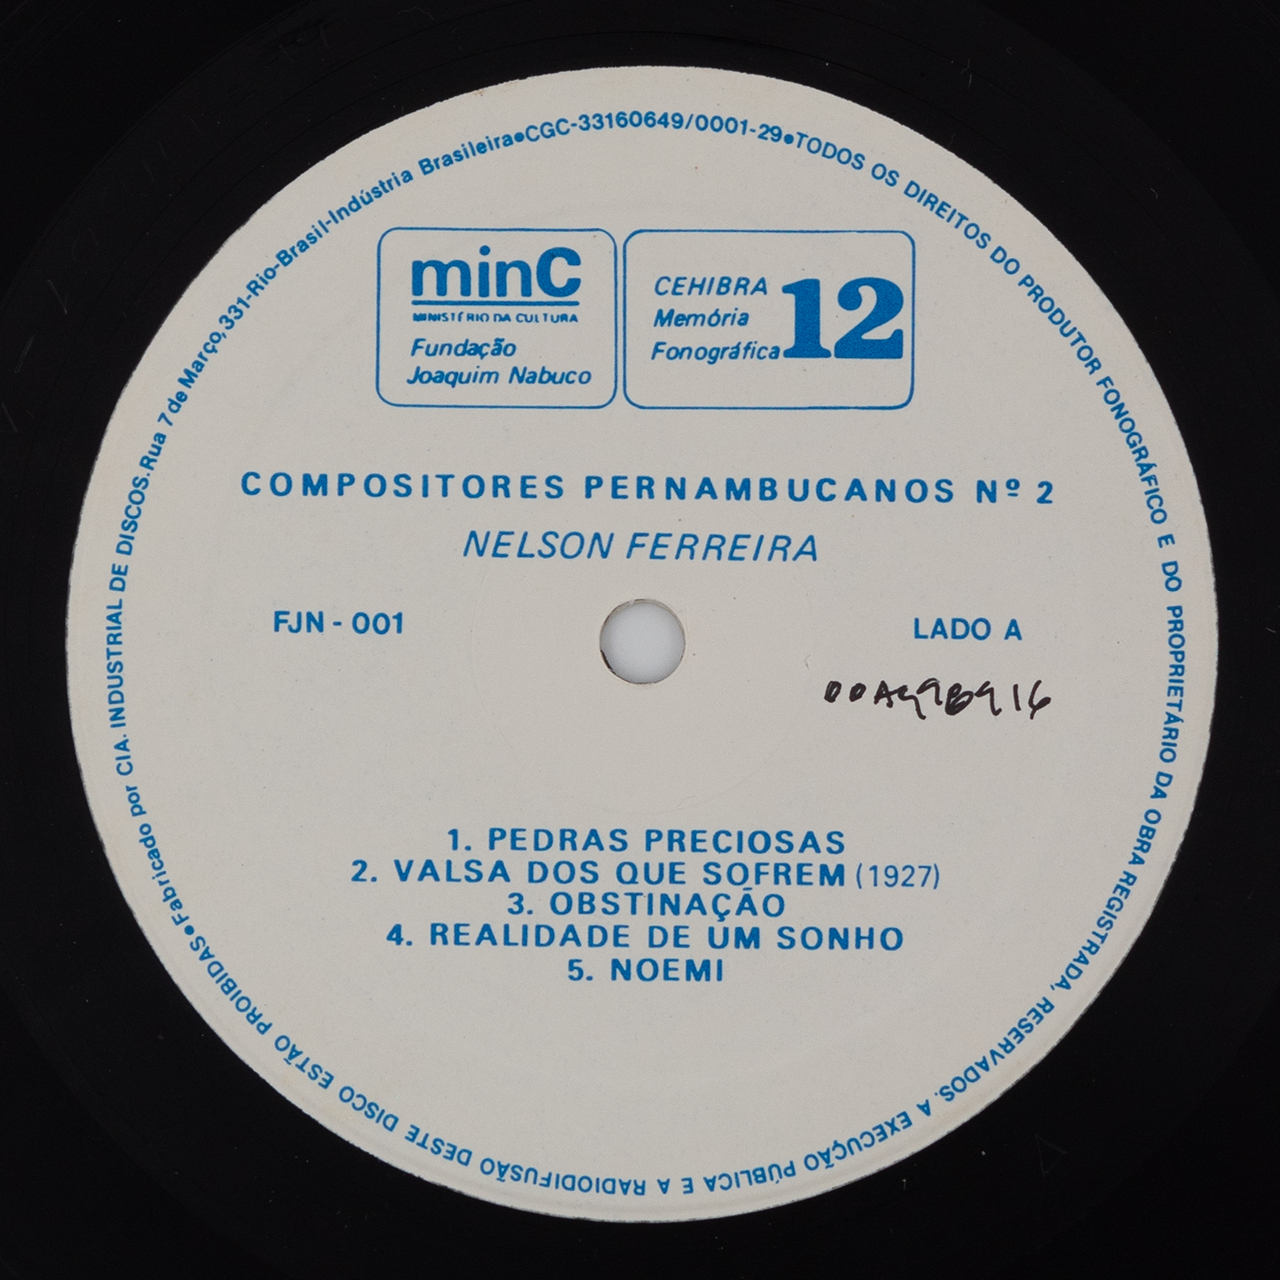 Compositores Pernambucanos Nº 2: Nelson Ferreira